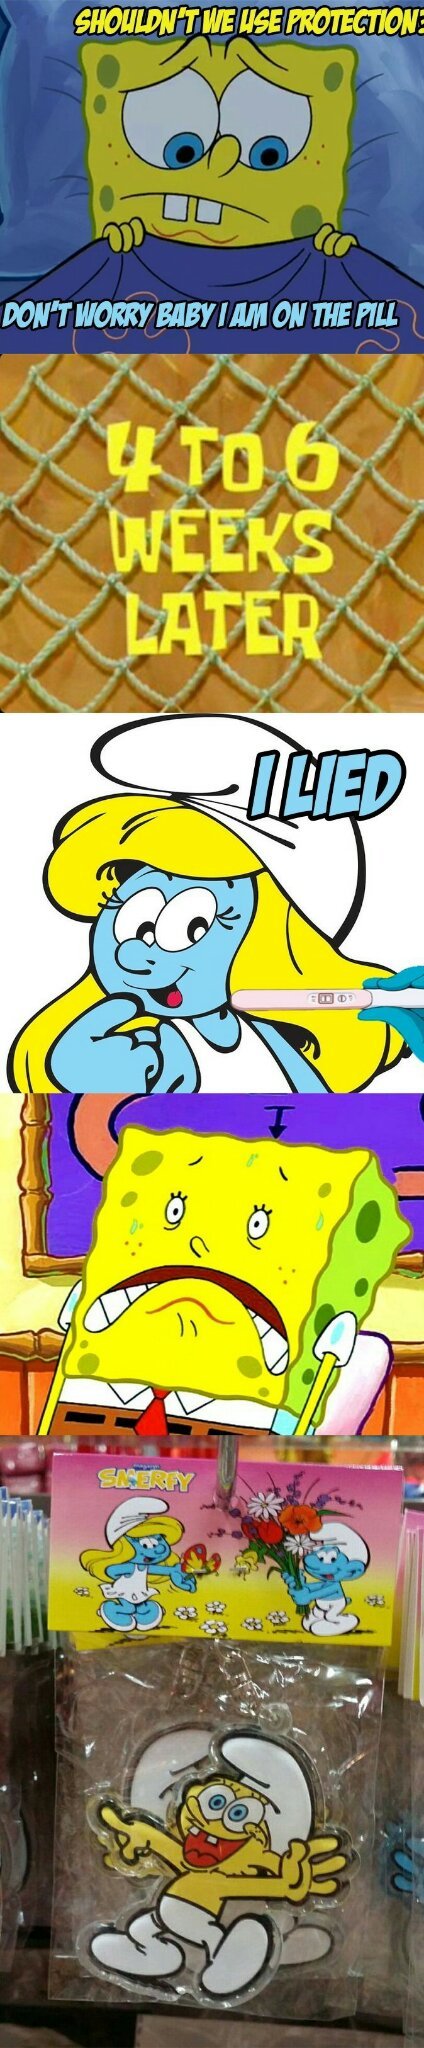 Shit just got real for Spongebob - meme